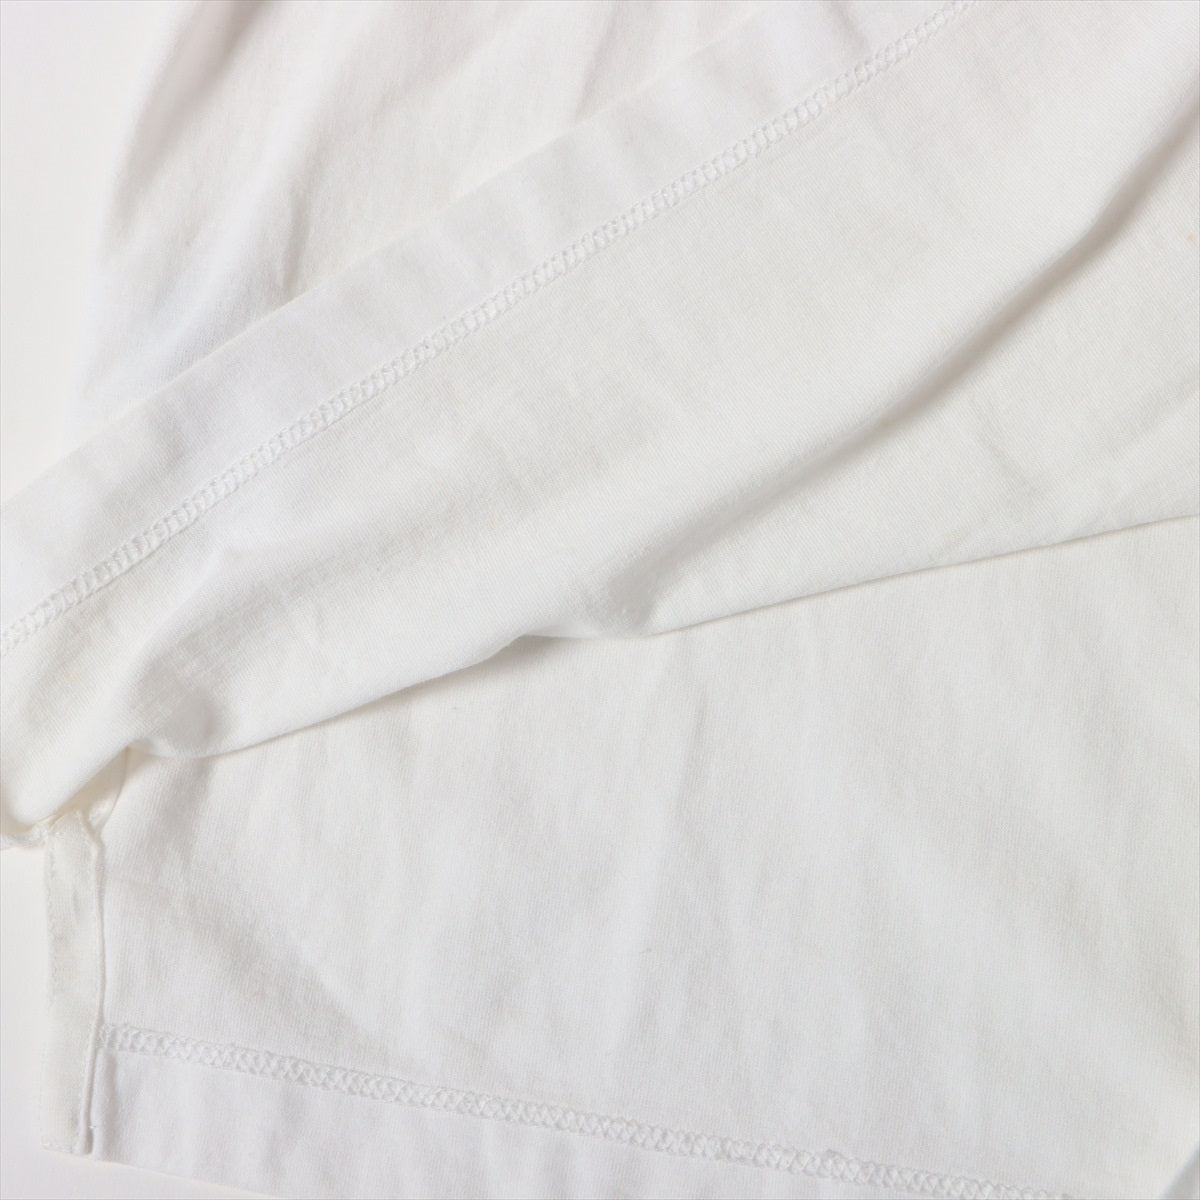 エルメス コットン Tシャツ XS ユニセックス ホワイト